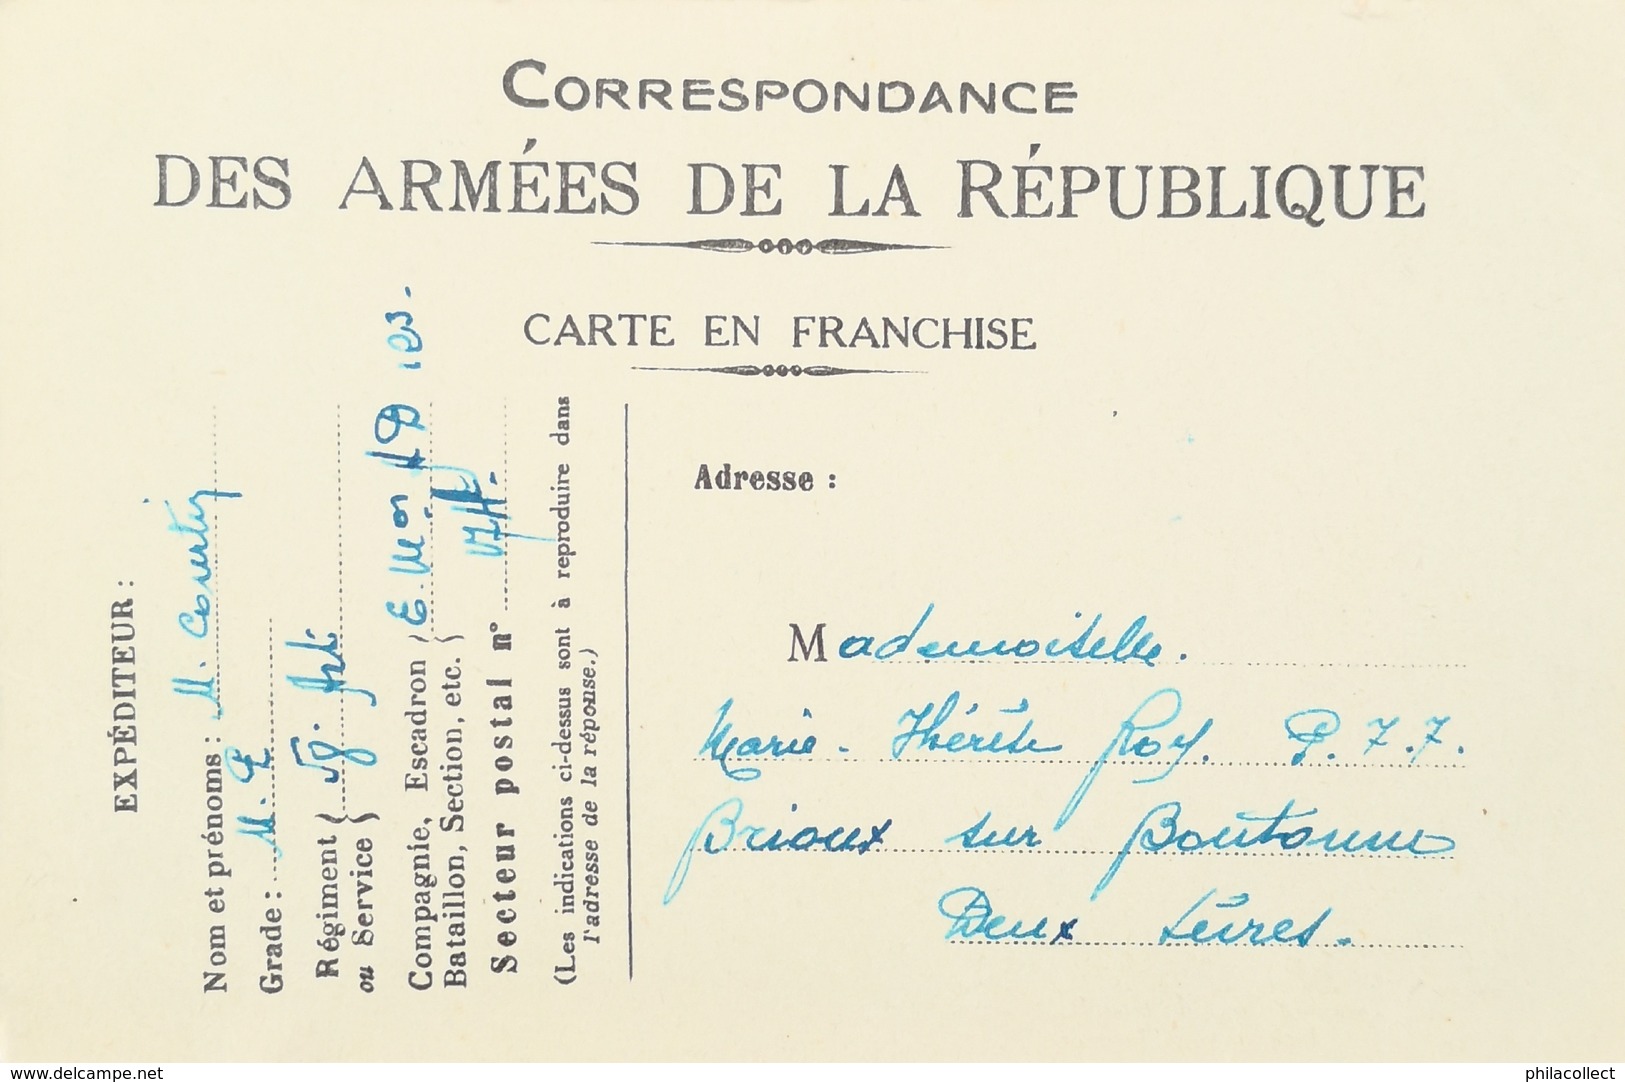 Carte Correspondance Des Armees De La Republique (France) Troupes Americaines - Une Arrivee Juin 1917 (MORSE CODE)) 19?? - Personajes